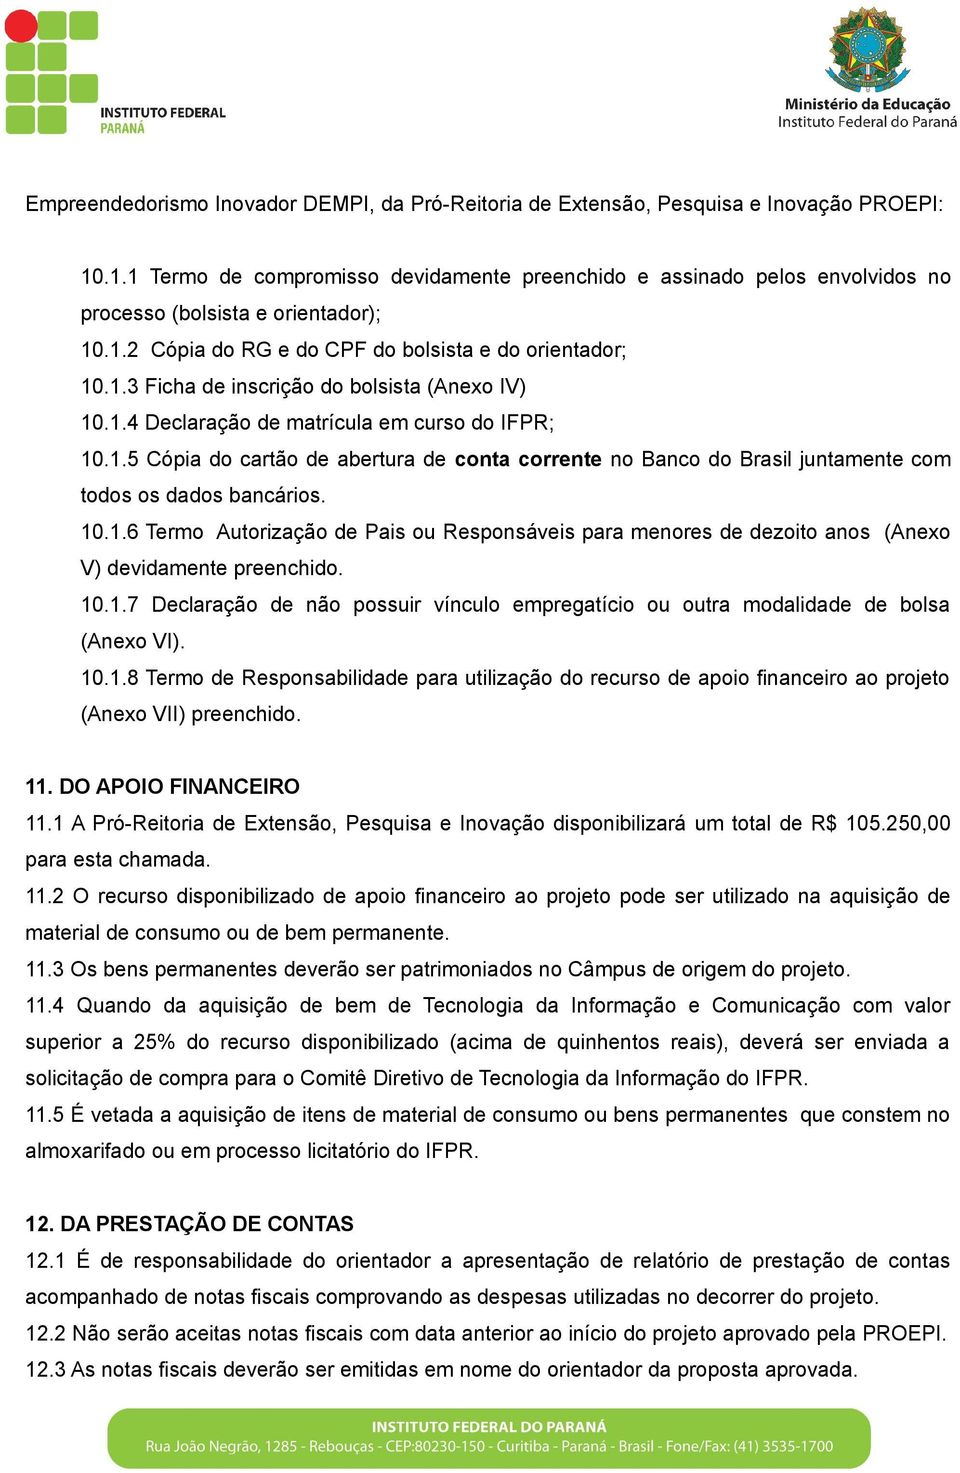 1.4 Declaração de matrícula em curso do IFPR; 10.1.5 Cópia do cartão de abertura de conta corrente no Banco do Brasil juntamente com todos os dados bancários. 10.1.6 Termo Autorização de Pais ou Responsáveis para menores de dezoito anos (Anexo V) devidamente preenchido.